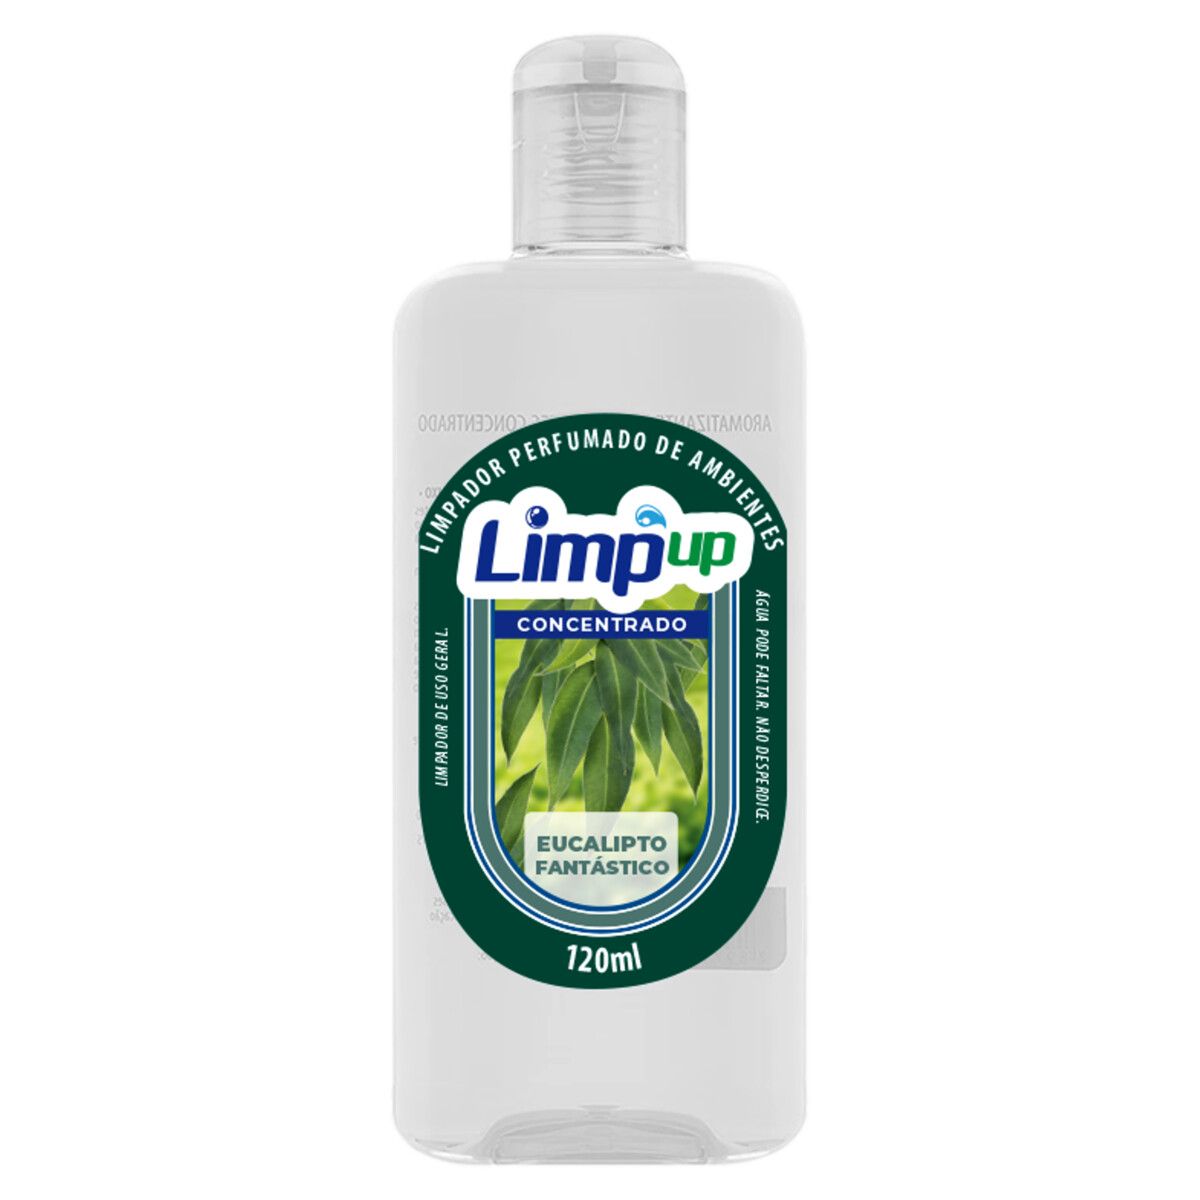 Limpador Perfumado Concentrado Limp Up Eucalipto Fantástico 120ml